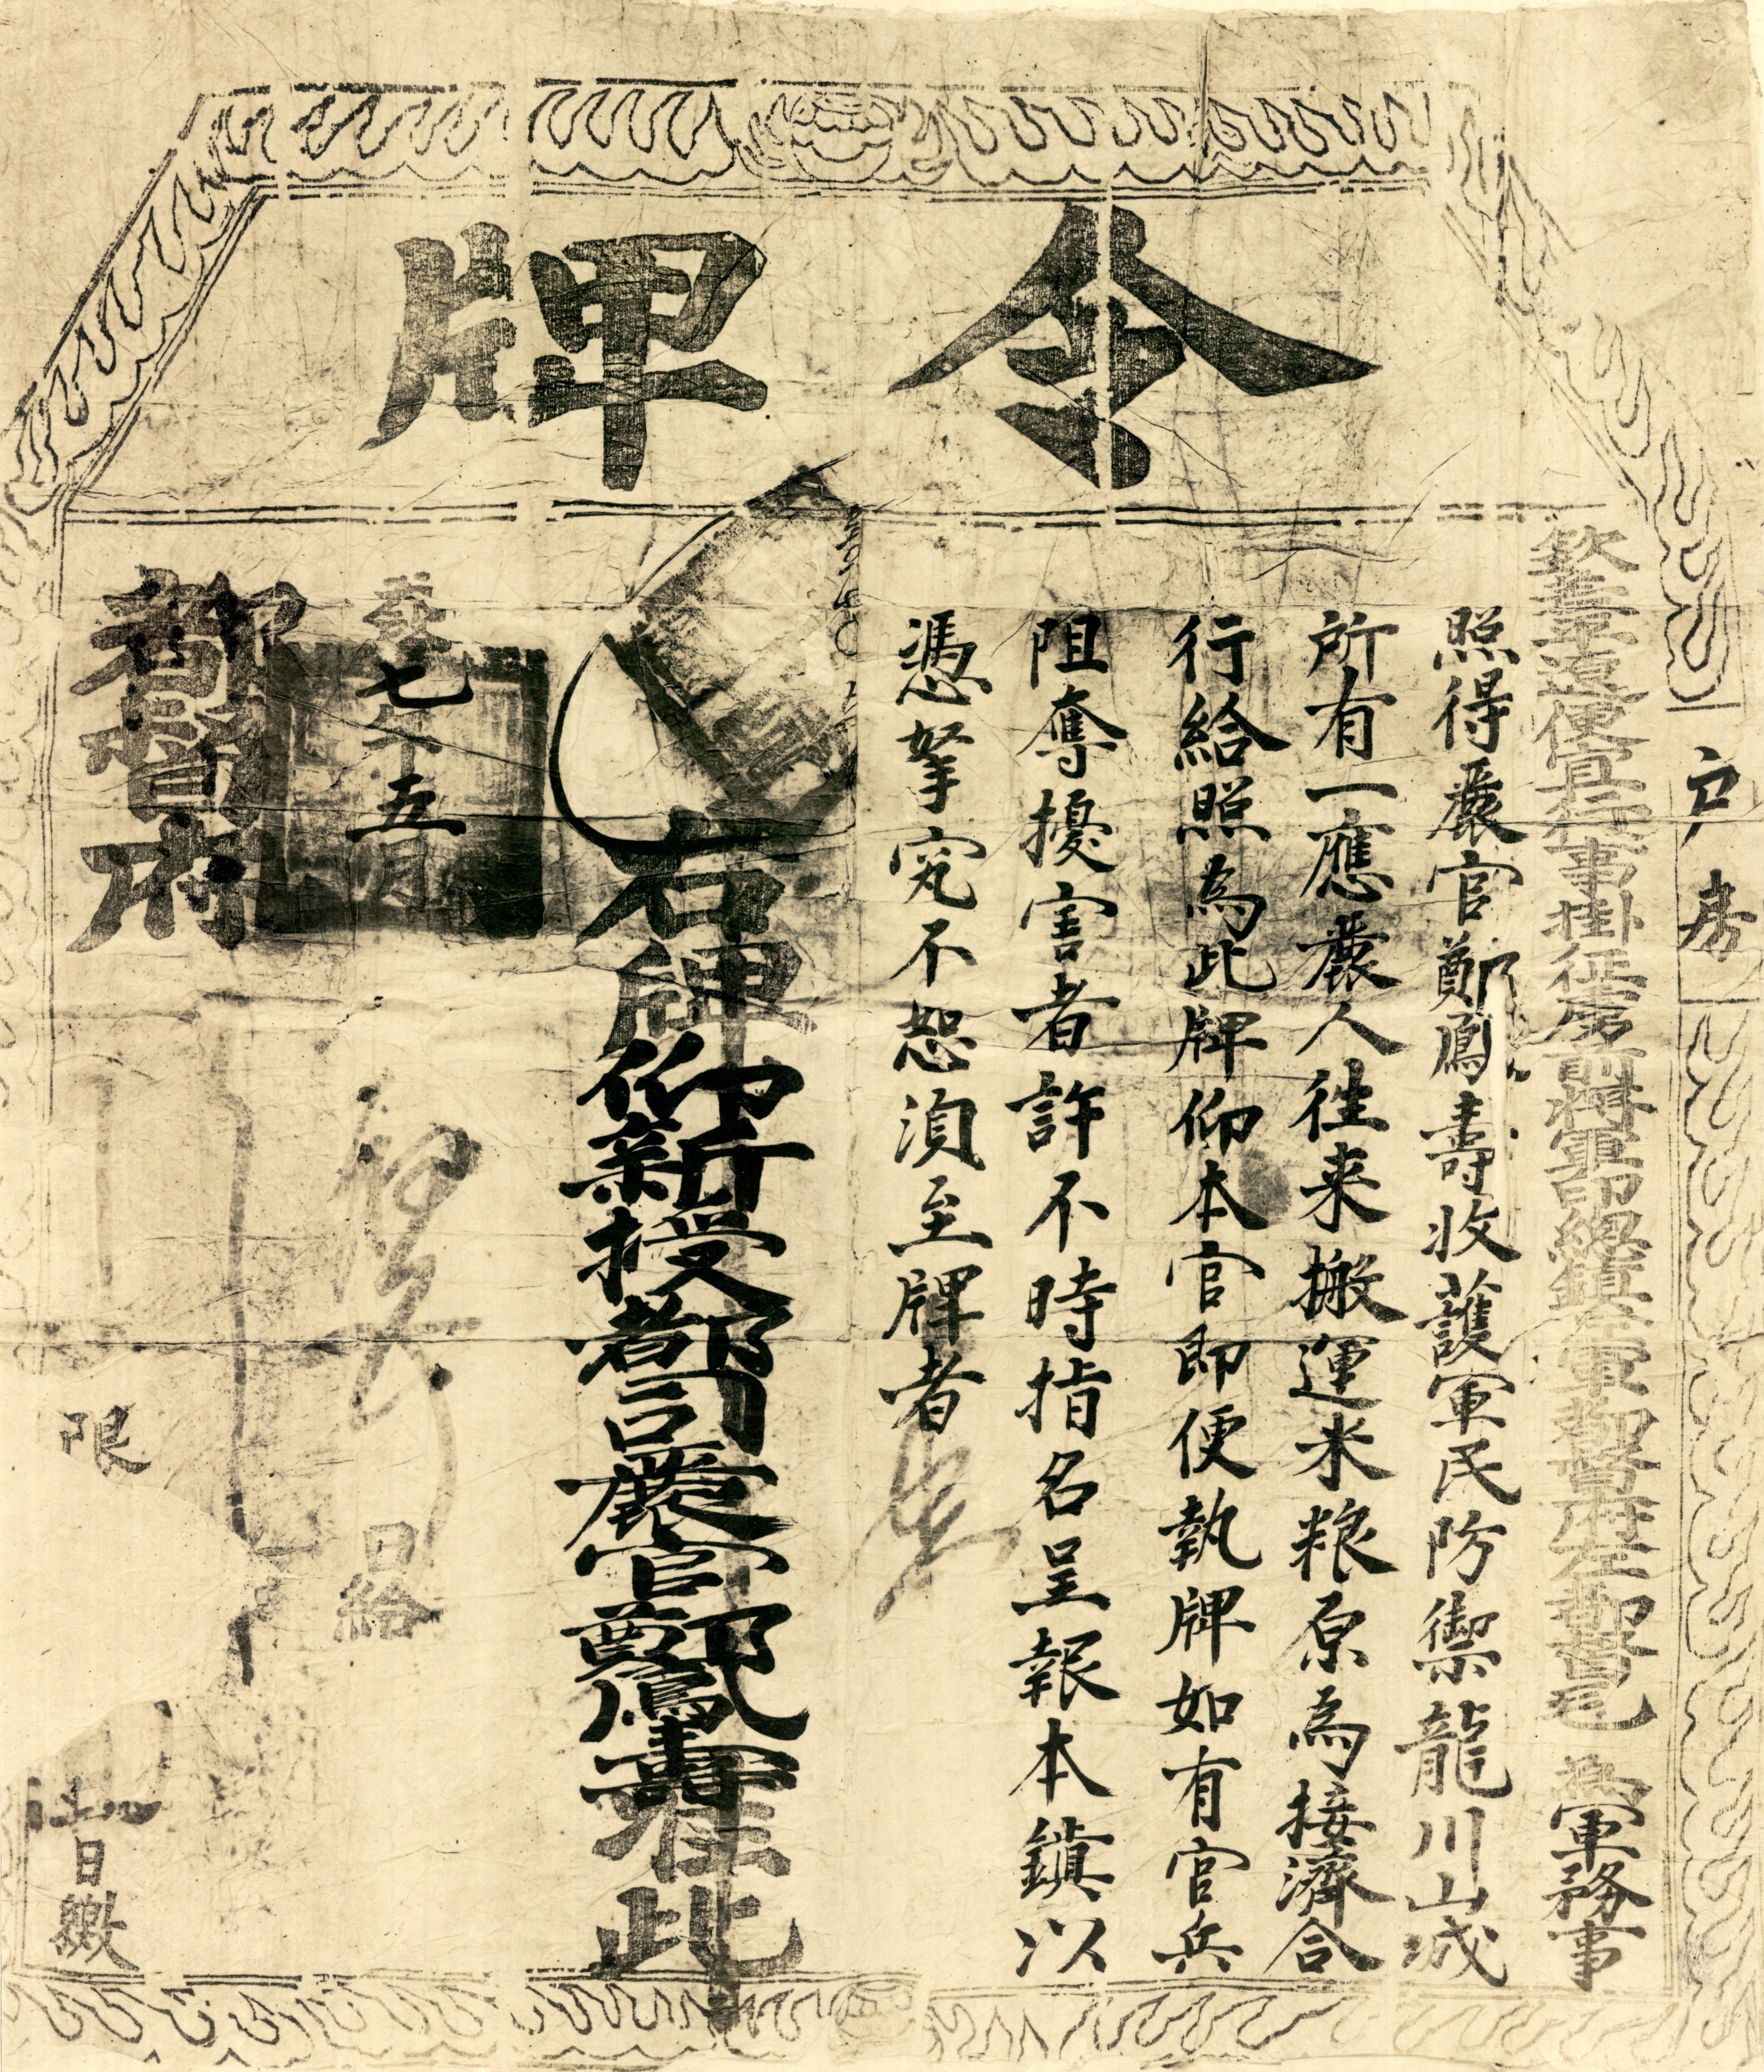 1627年毛文龍授予朝鮮義兵將鄭鳳壽的令牌